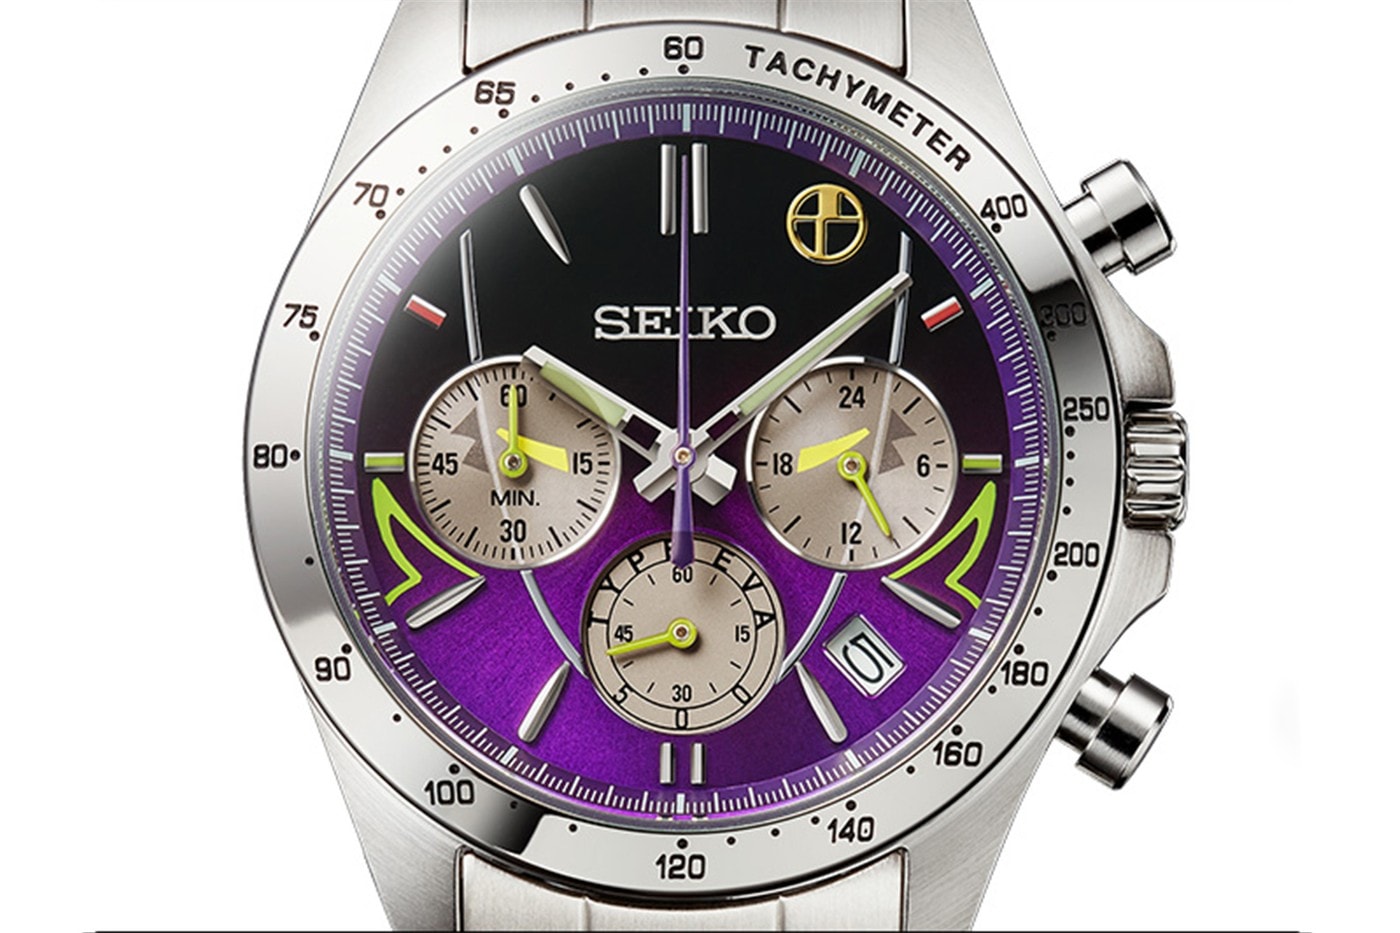 《新世紀福音戰士 Evangelion》x Seiko 全新联名錶款正式登場